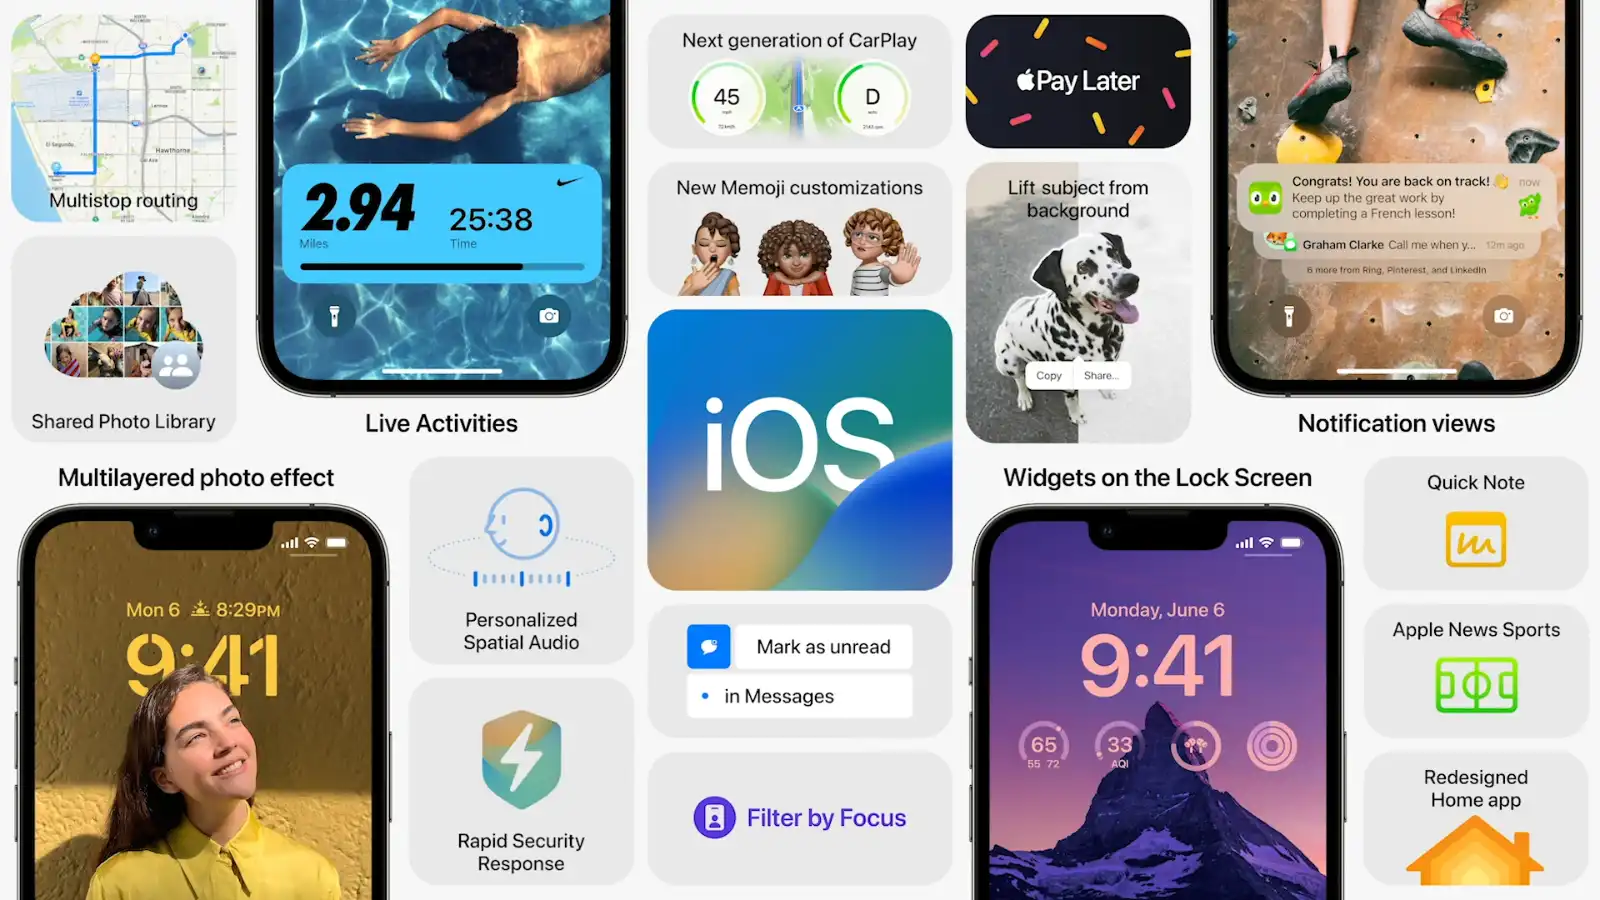 Cập nhật iOS 16 cho iPhone 8 và mới hơn! Hãy trải nghiệm những cải tiến tuyệt vời mà Apple mang đến cho bạn. Từ hiệu năng tăng cường đến tính năng mới đầy tiện ích, iOS 16 là bản cập nhật đáng chờ đợi nhất trong năm nay. Nhanh chóng cập nhật và thưởng thức những tính năng mới đầy thú vị trên chiếc iPhone của bạn!